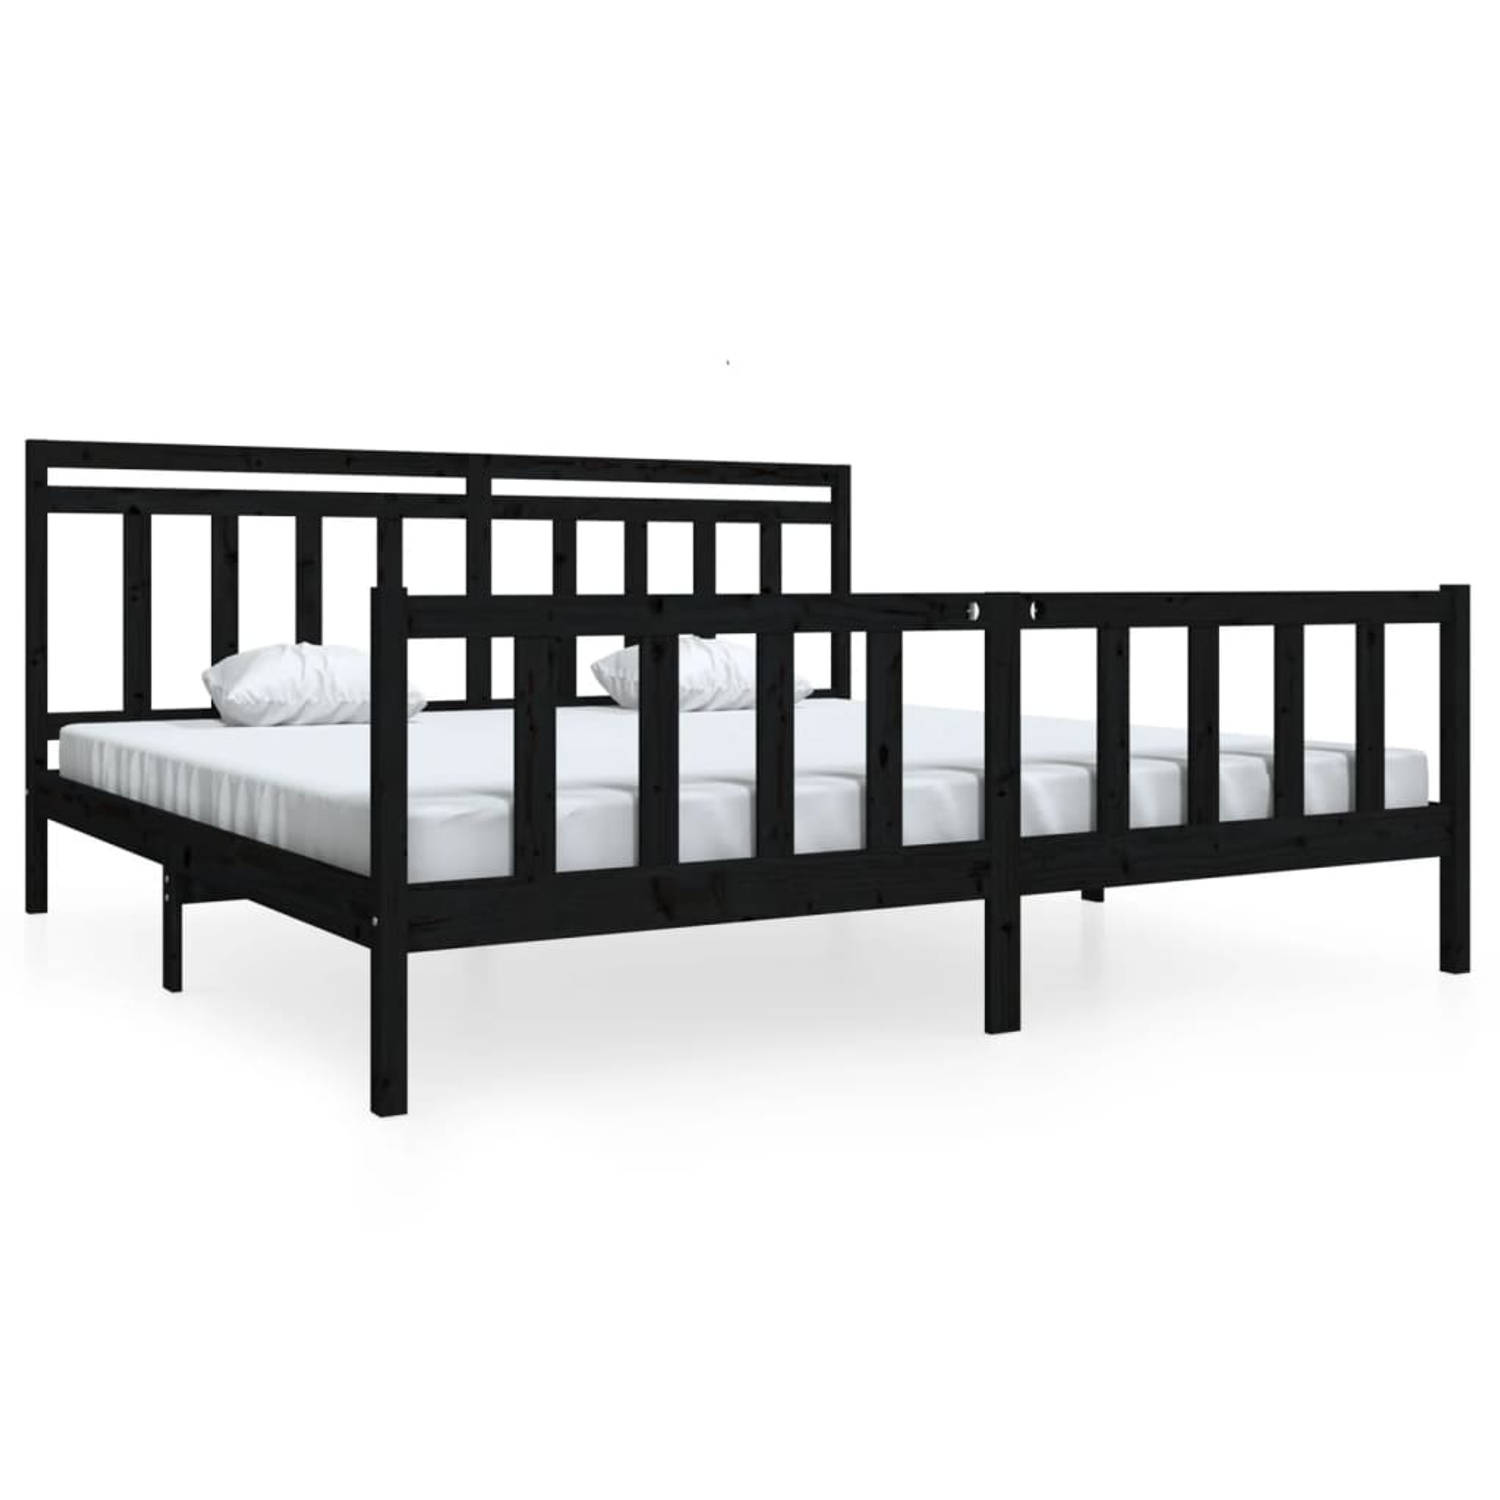 The Living Store Bedframe massief hout zwart 200x200 cm - Bedframe - Bedframes - Tweepersoonsbed - Bed - Bedombouw - Dubbel Bed - Frame - Bed Frame - Ledikant - Bedframe Met Hoofde